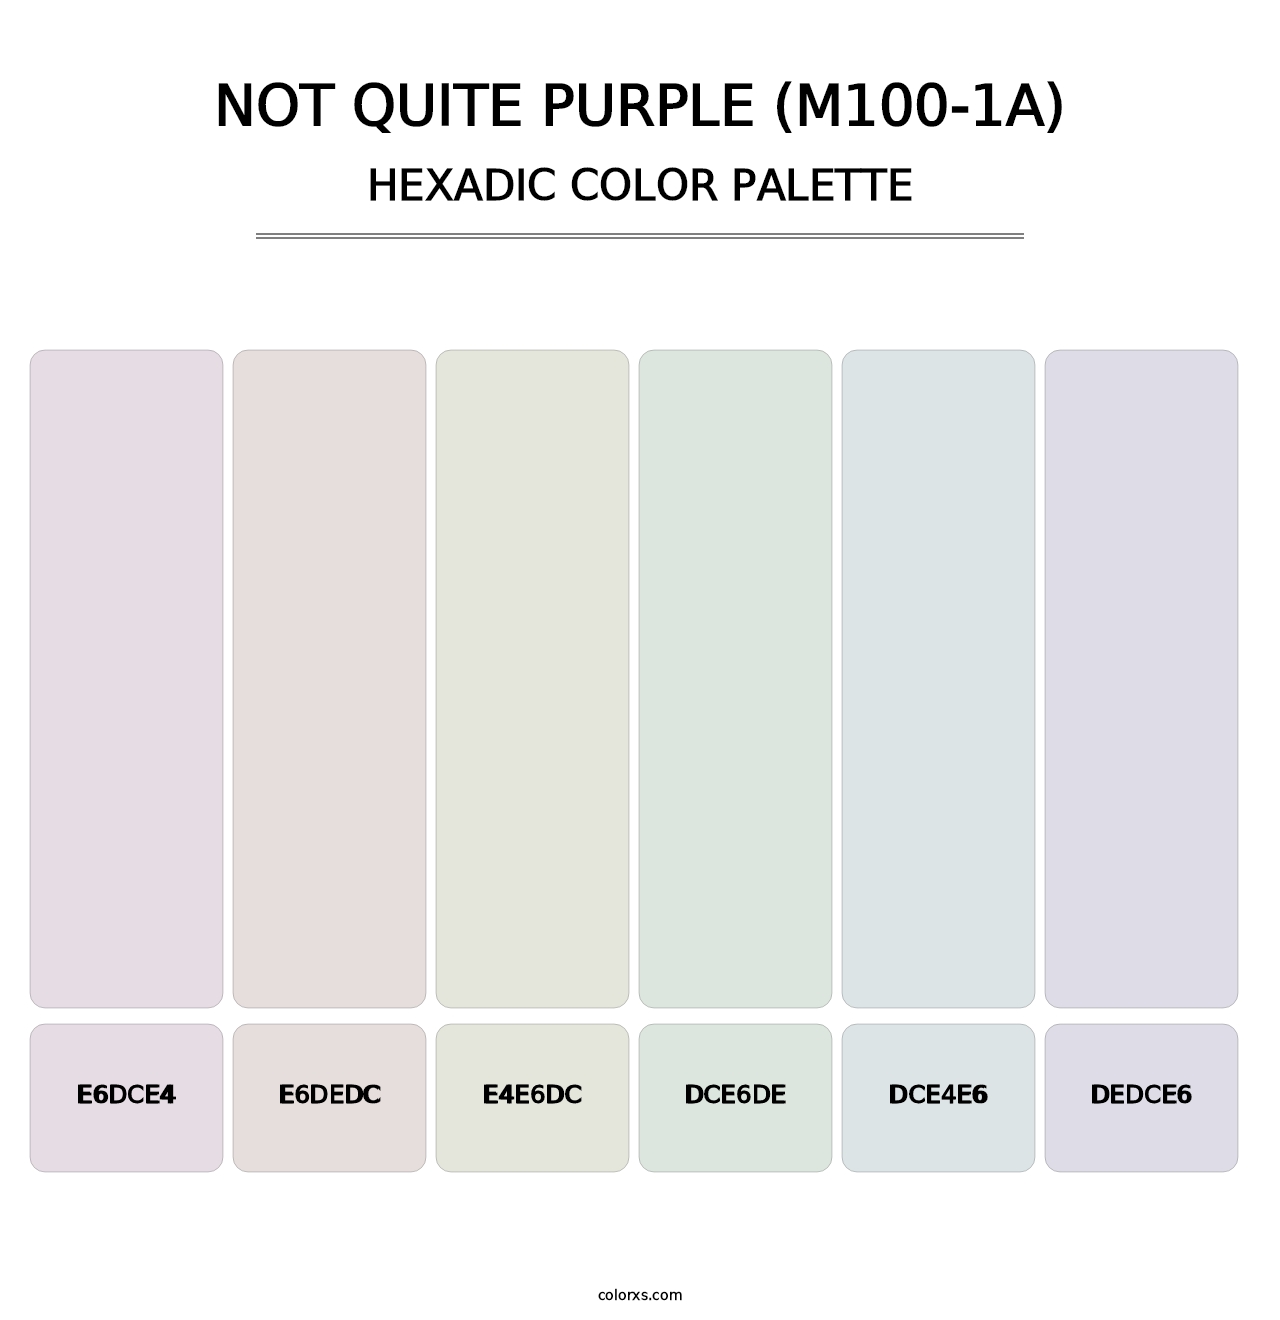 Not Quite Purple (M100-1A) - Hexadic Color Palette